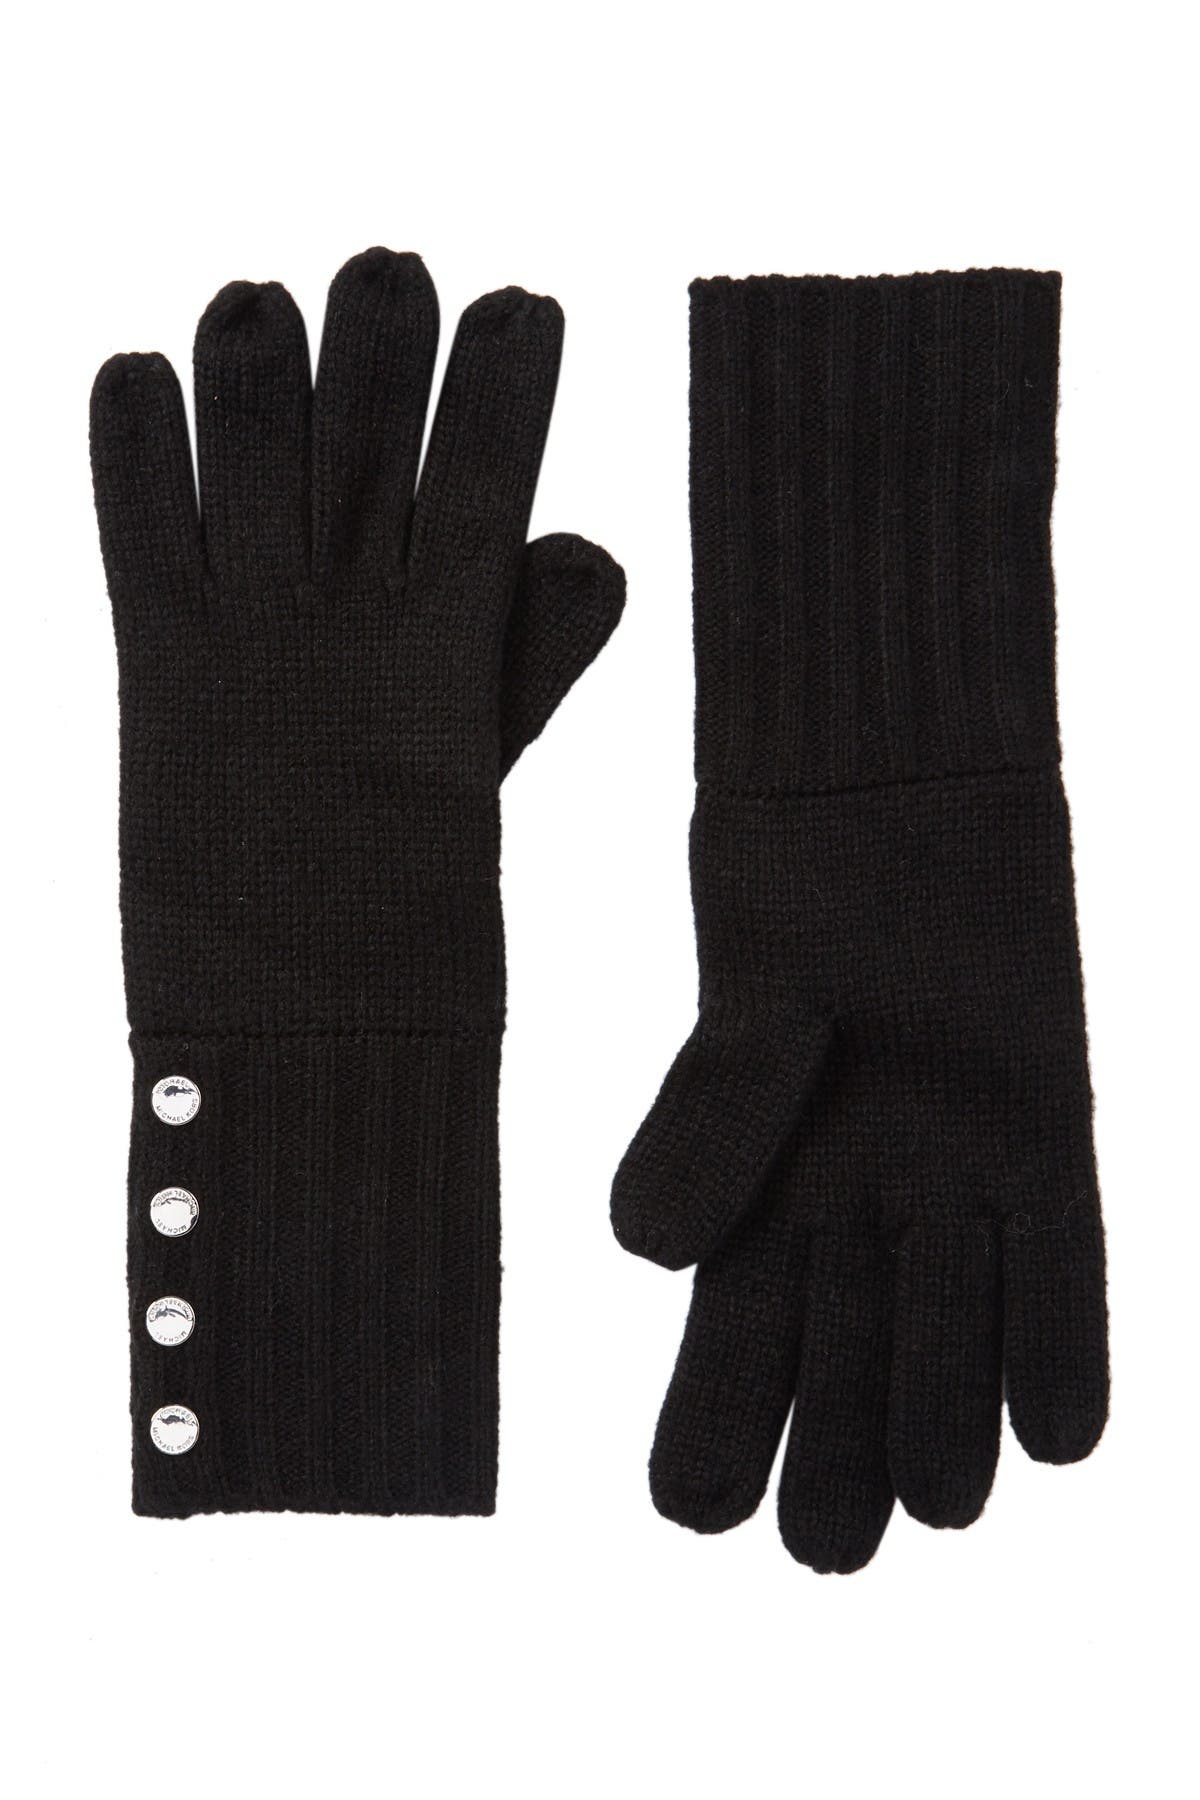 Michael Kors | Knit Gloves | Nordstrom Rack